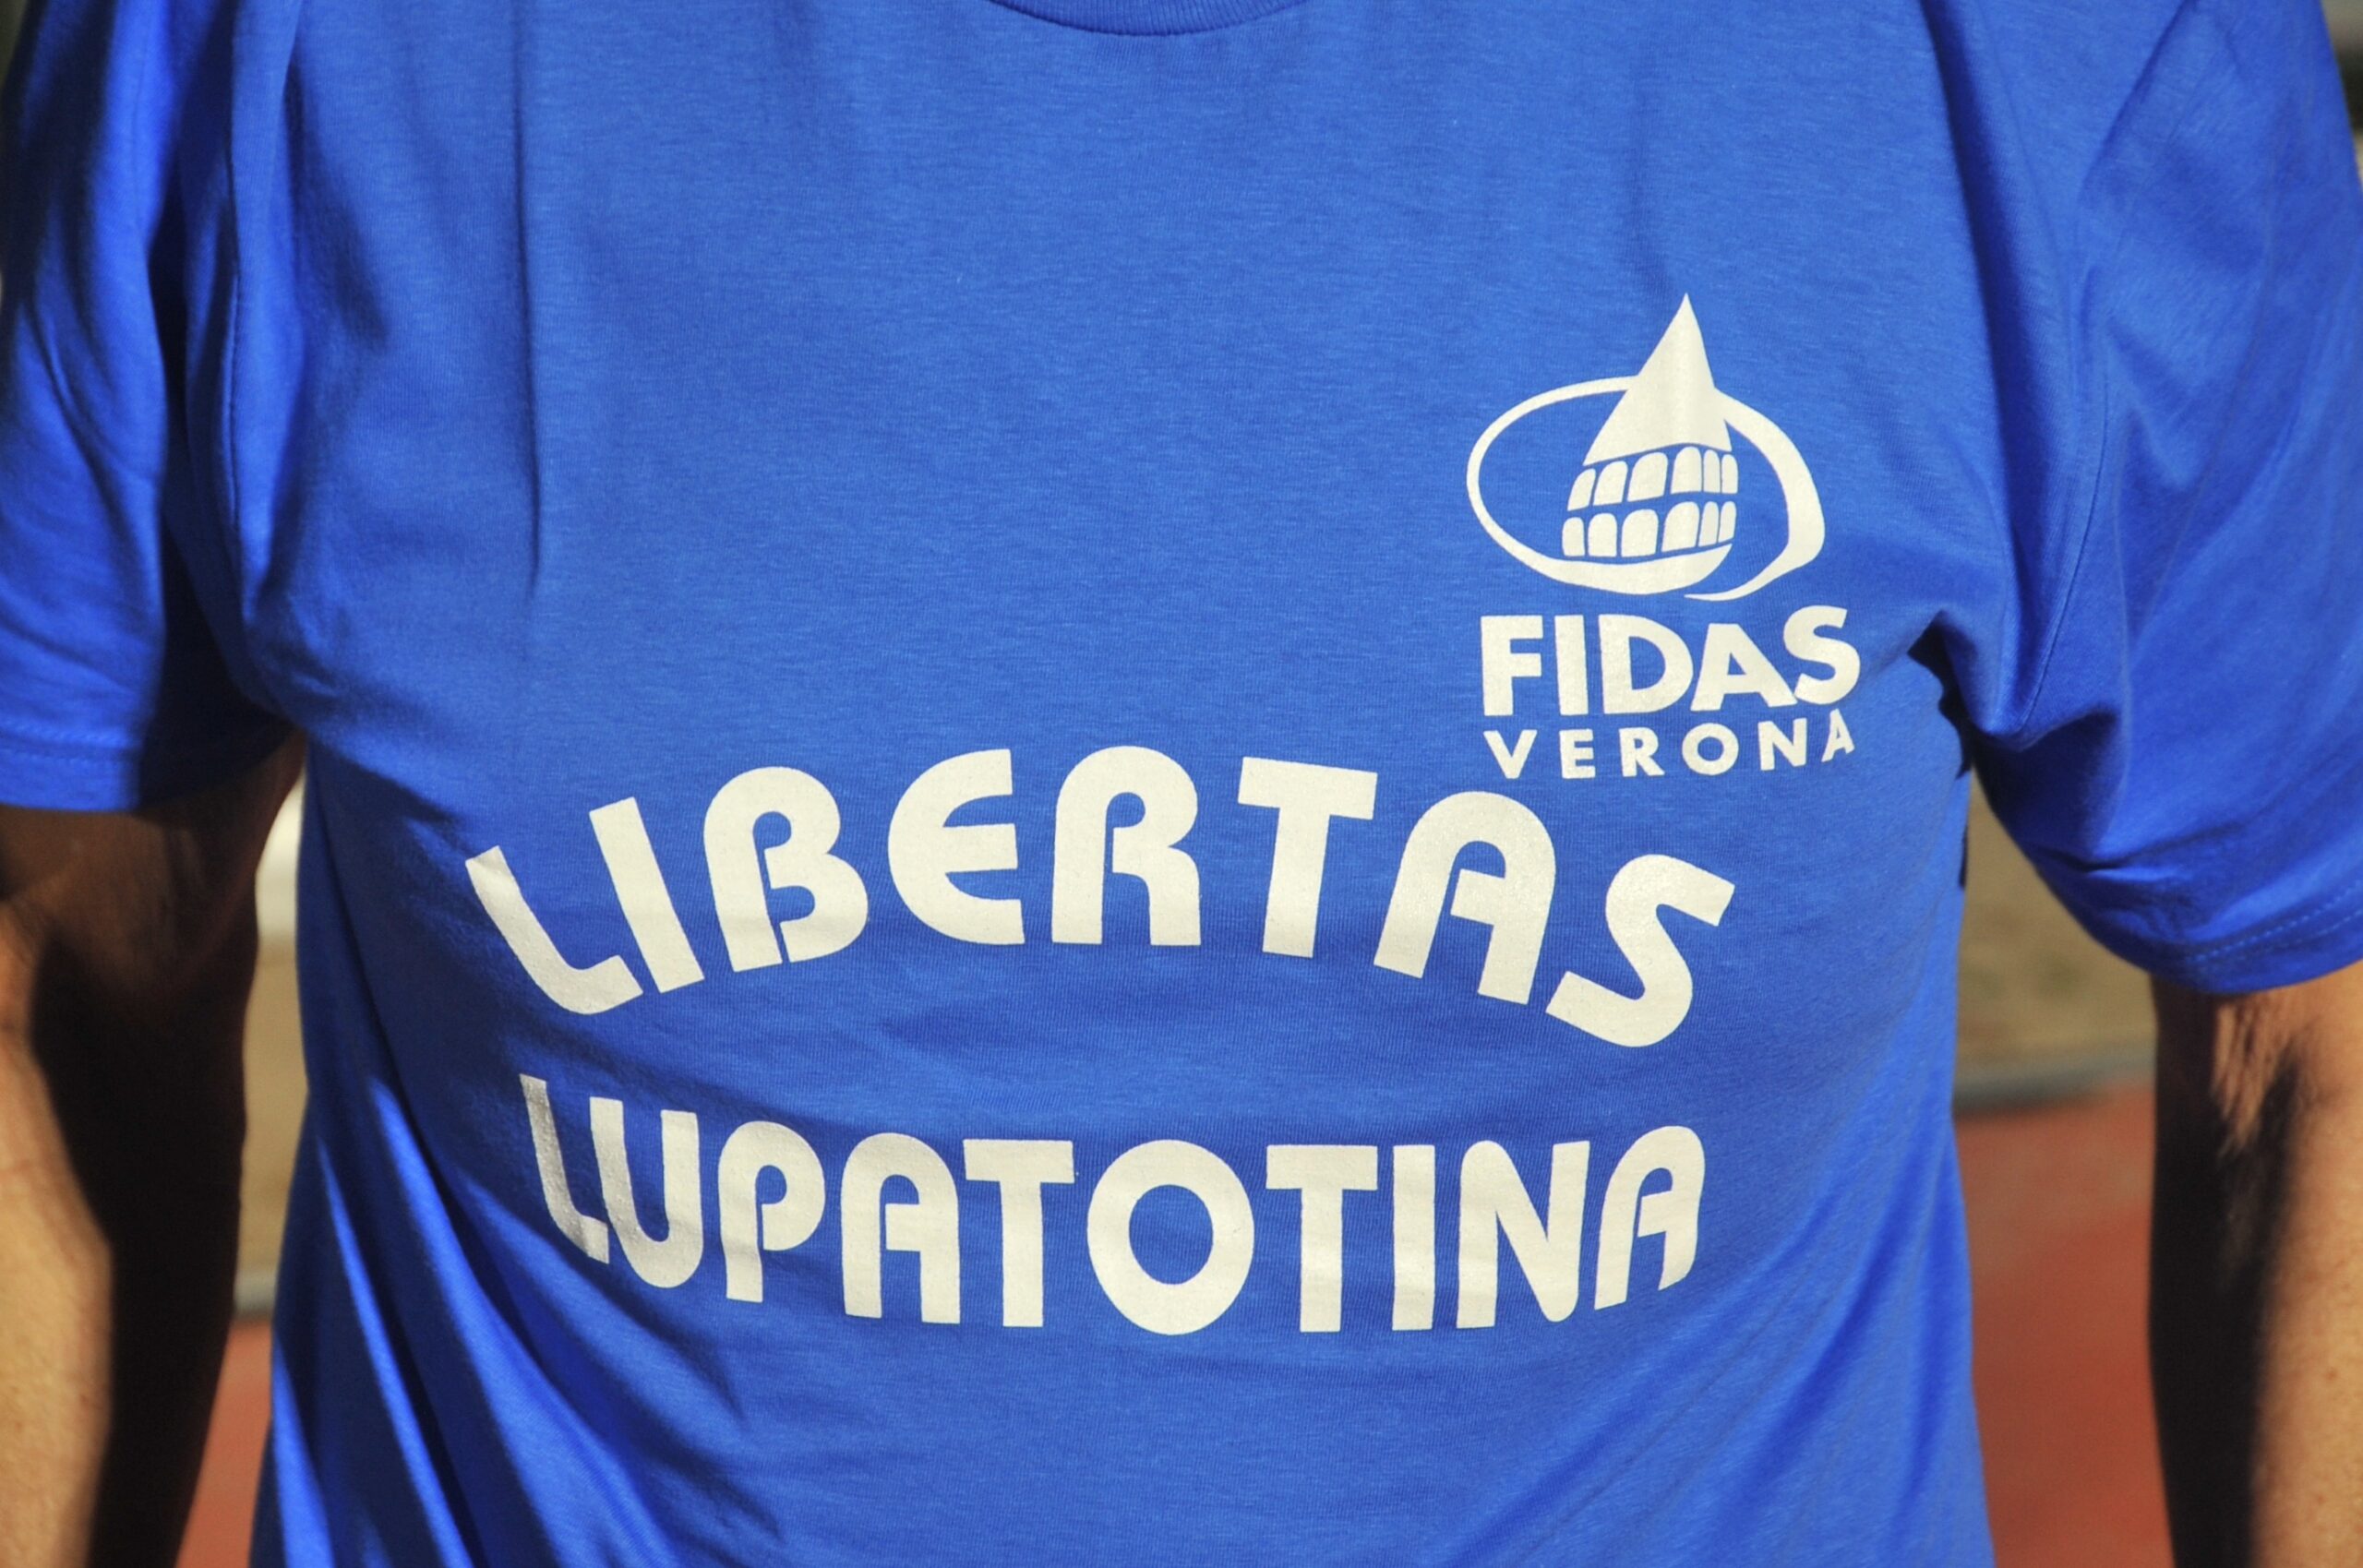 Il logo di Fidas Verona sulle magliette della Polisportiva Libertas Lupatotina 